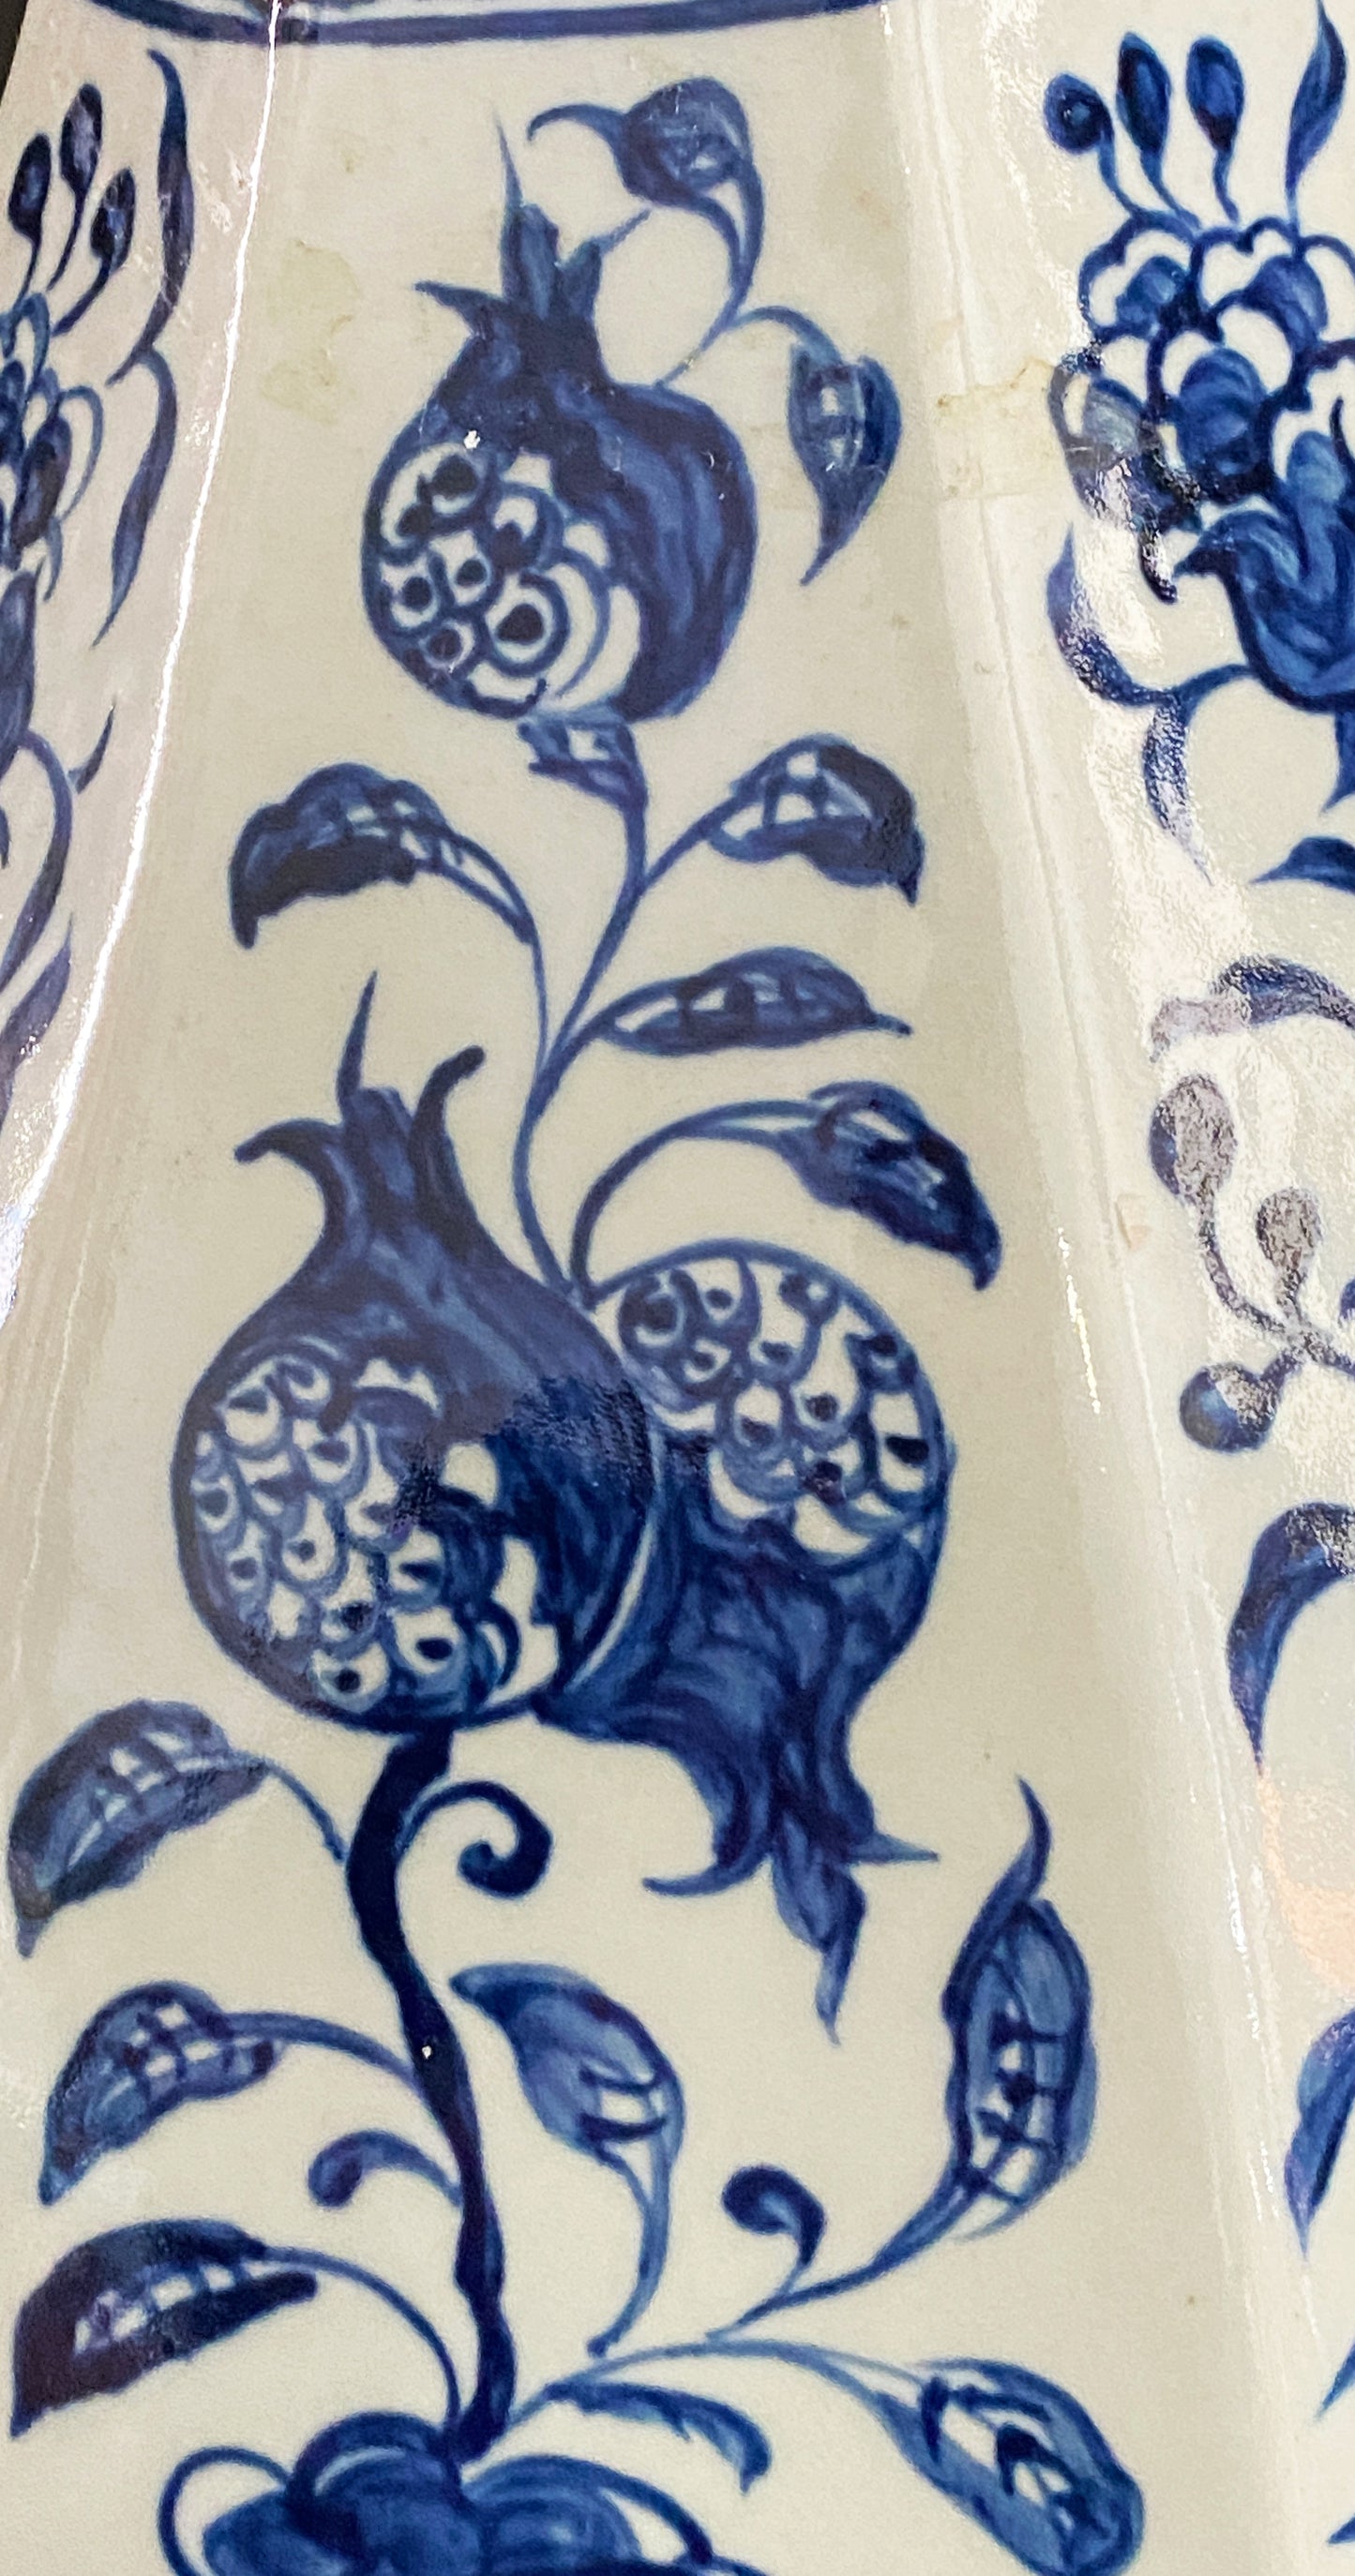 Chinoiserie Octagonal Blue & White Lidded Vase 24" H